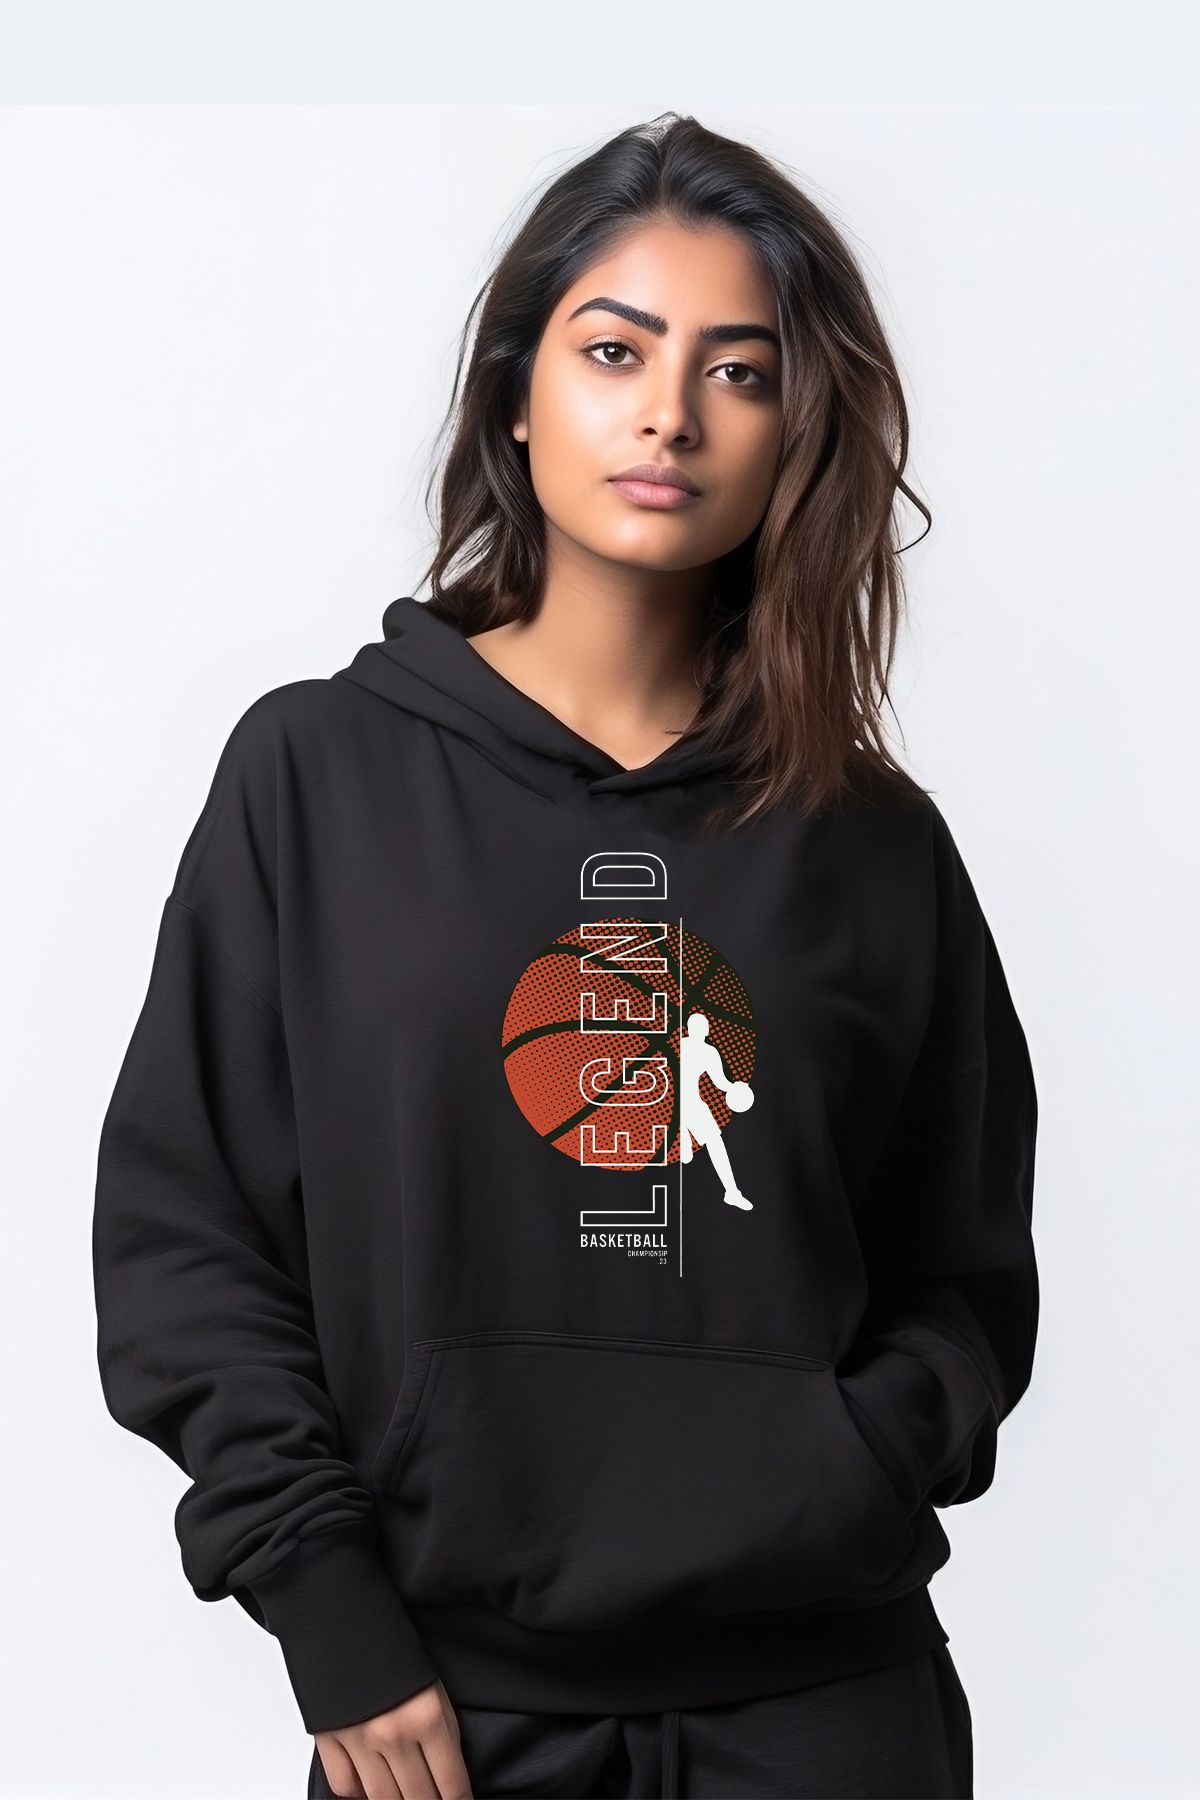 ADA BEBEK ÇOCUK Legend Basketball Tarz Kapşonlu Kadın Sweatshirt